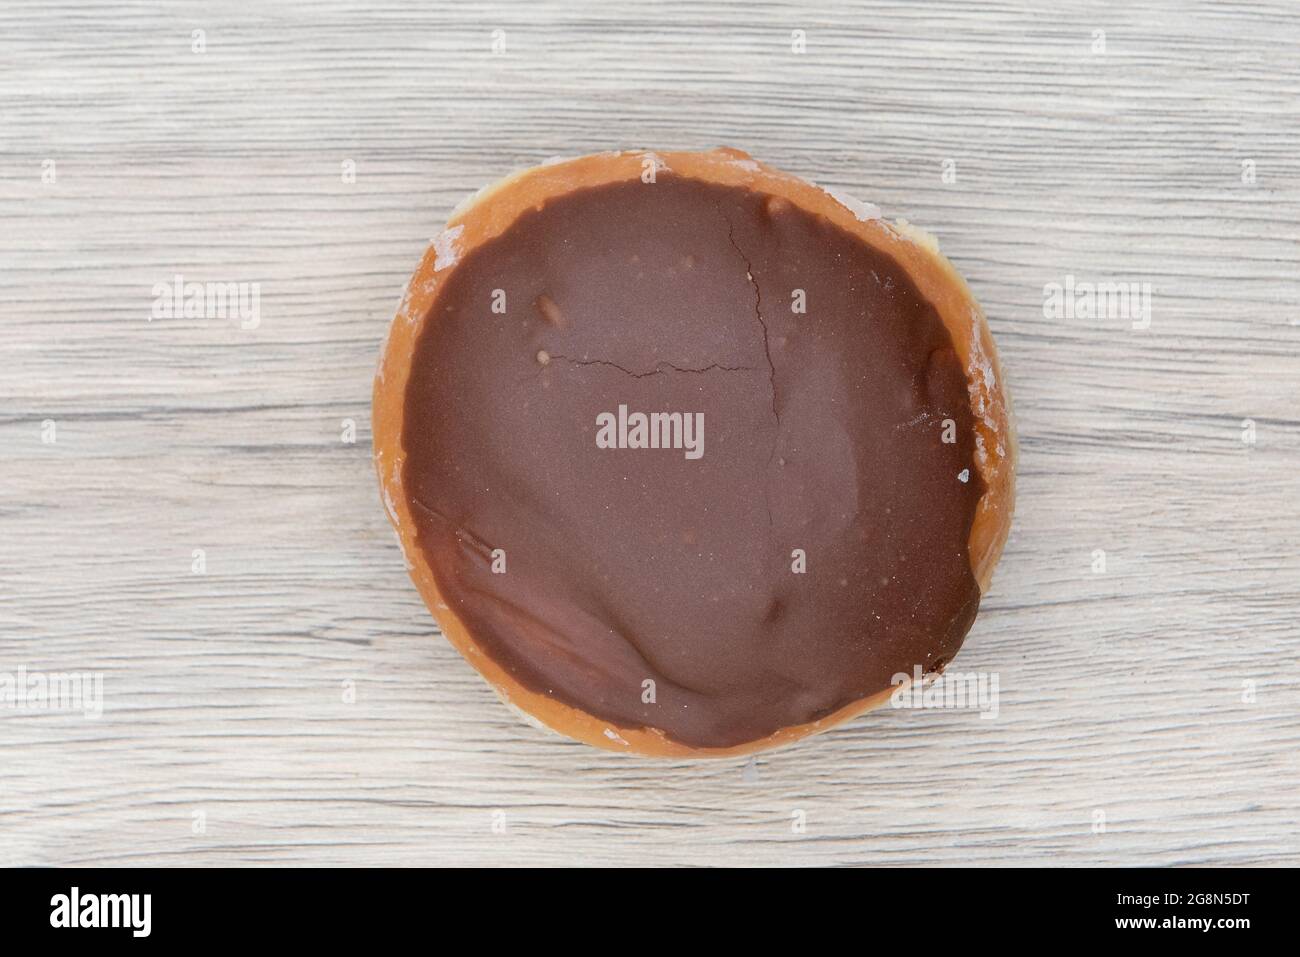 Der von oben aufgemotzte Donut ist mit einer Schokoladenbeschichtung versehen und sorgt so für einen süßen Genuss. Stockfoto